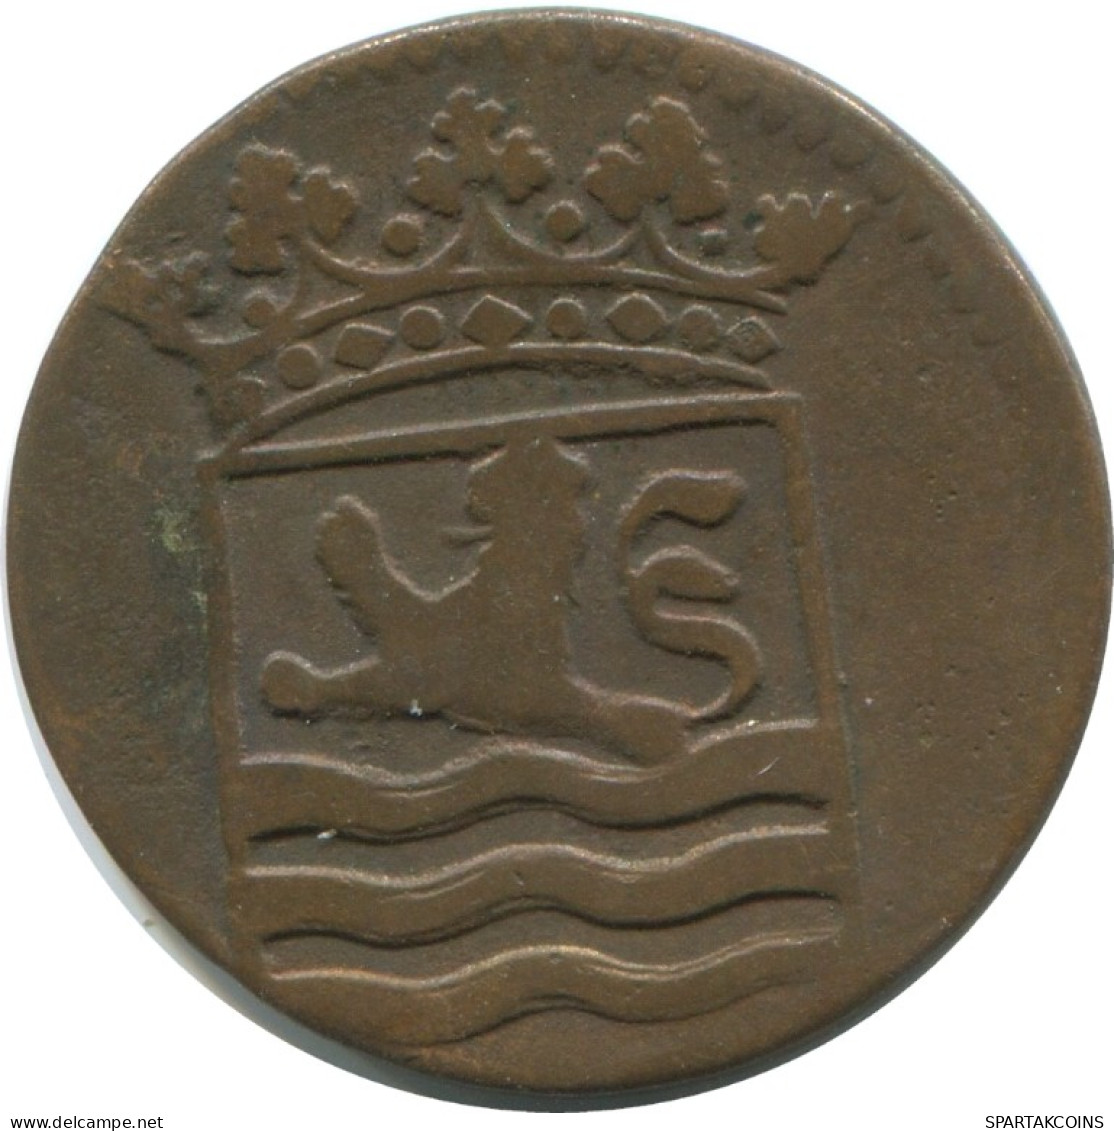 1766 ZEALAND VOC DUIT NIEDERLANDE OSTINDIEN Koloniale Münze #AE723.16.D.A - Niederländisch-Indien